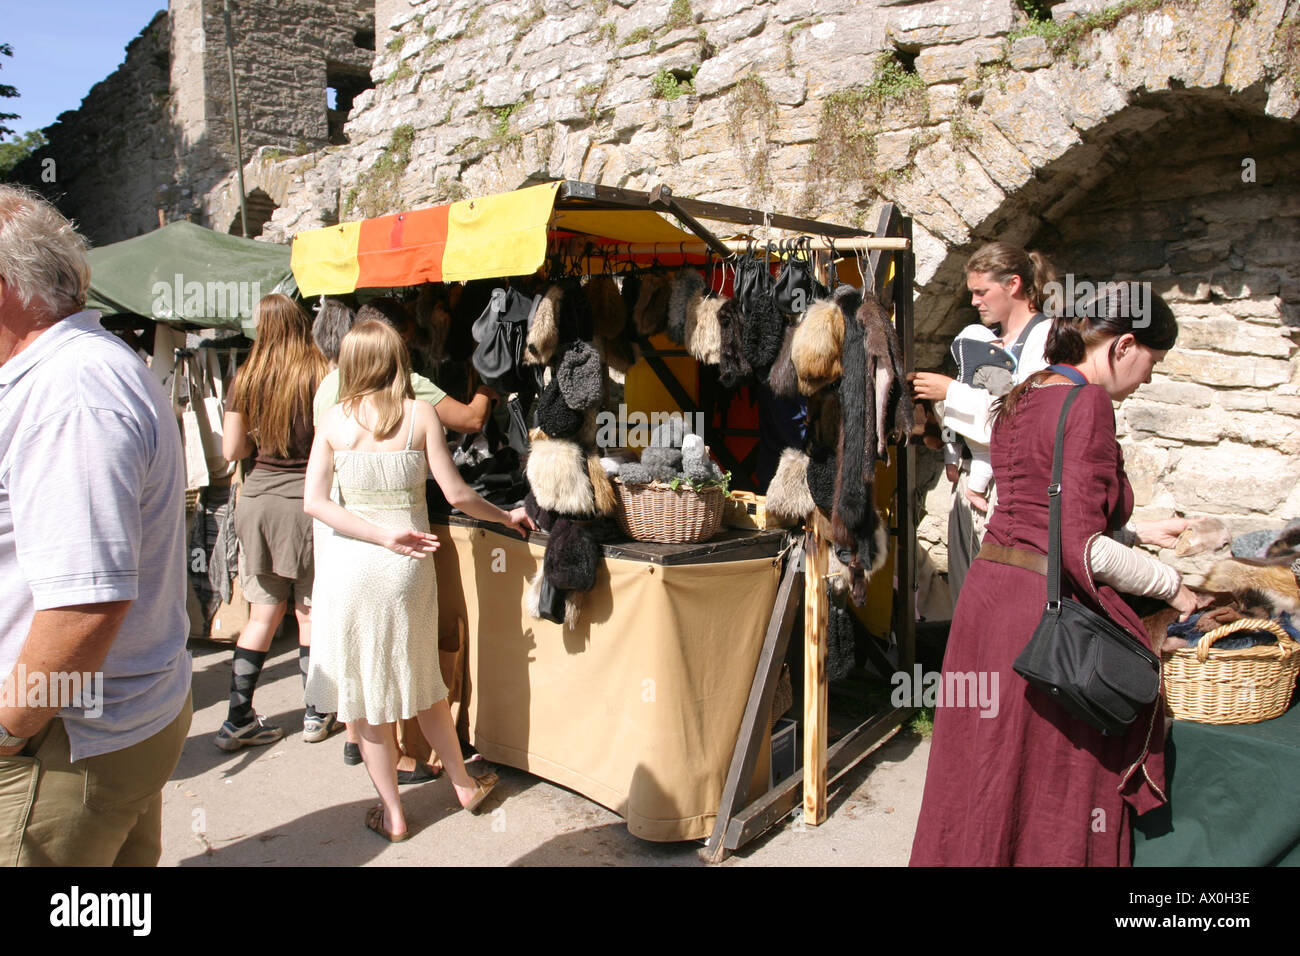 Les ventes de fourrures dans le marché médiéval à Visby en Suède Gotland Banque D'Images